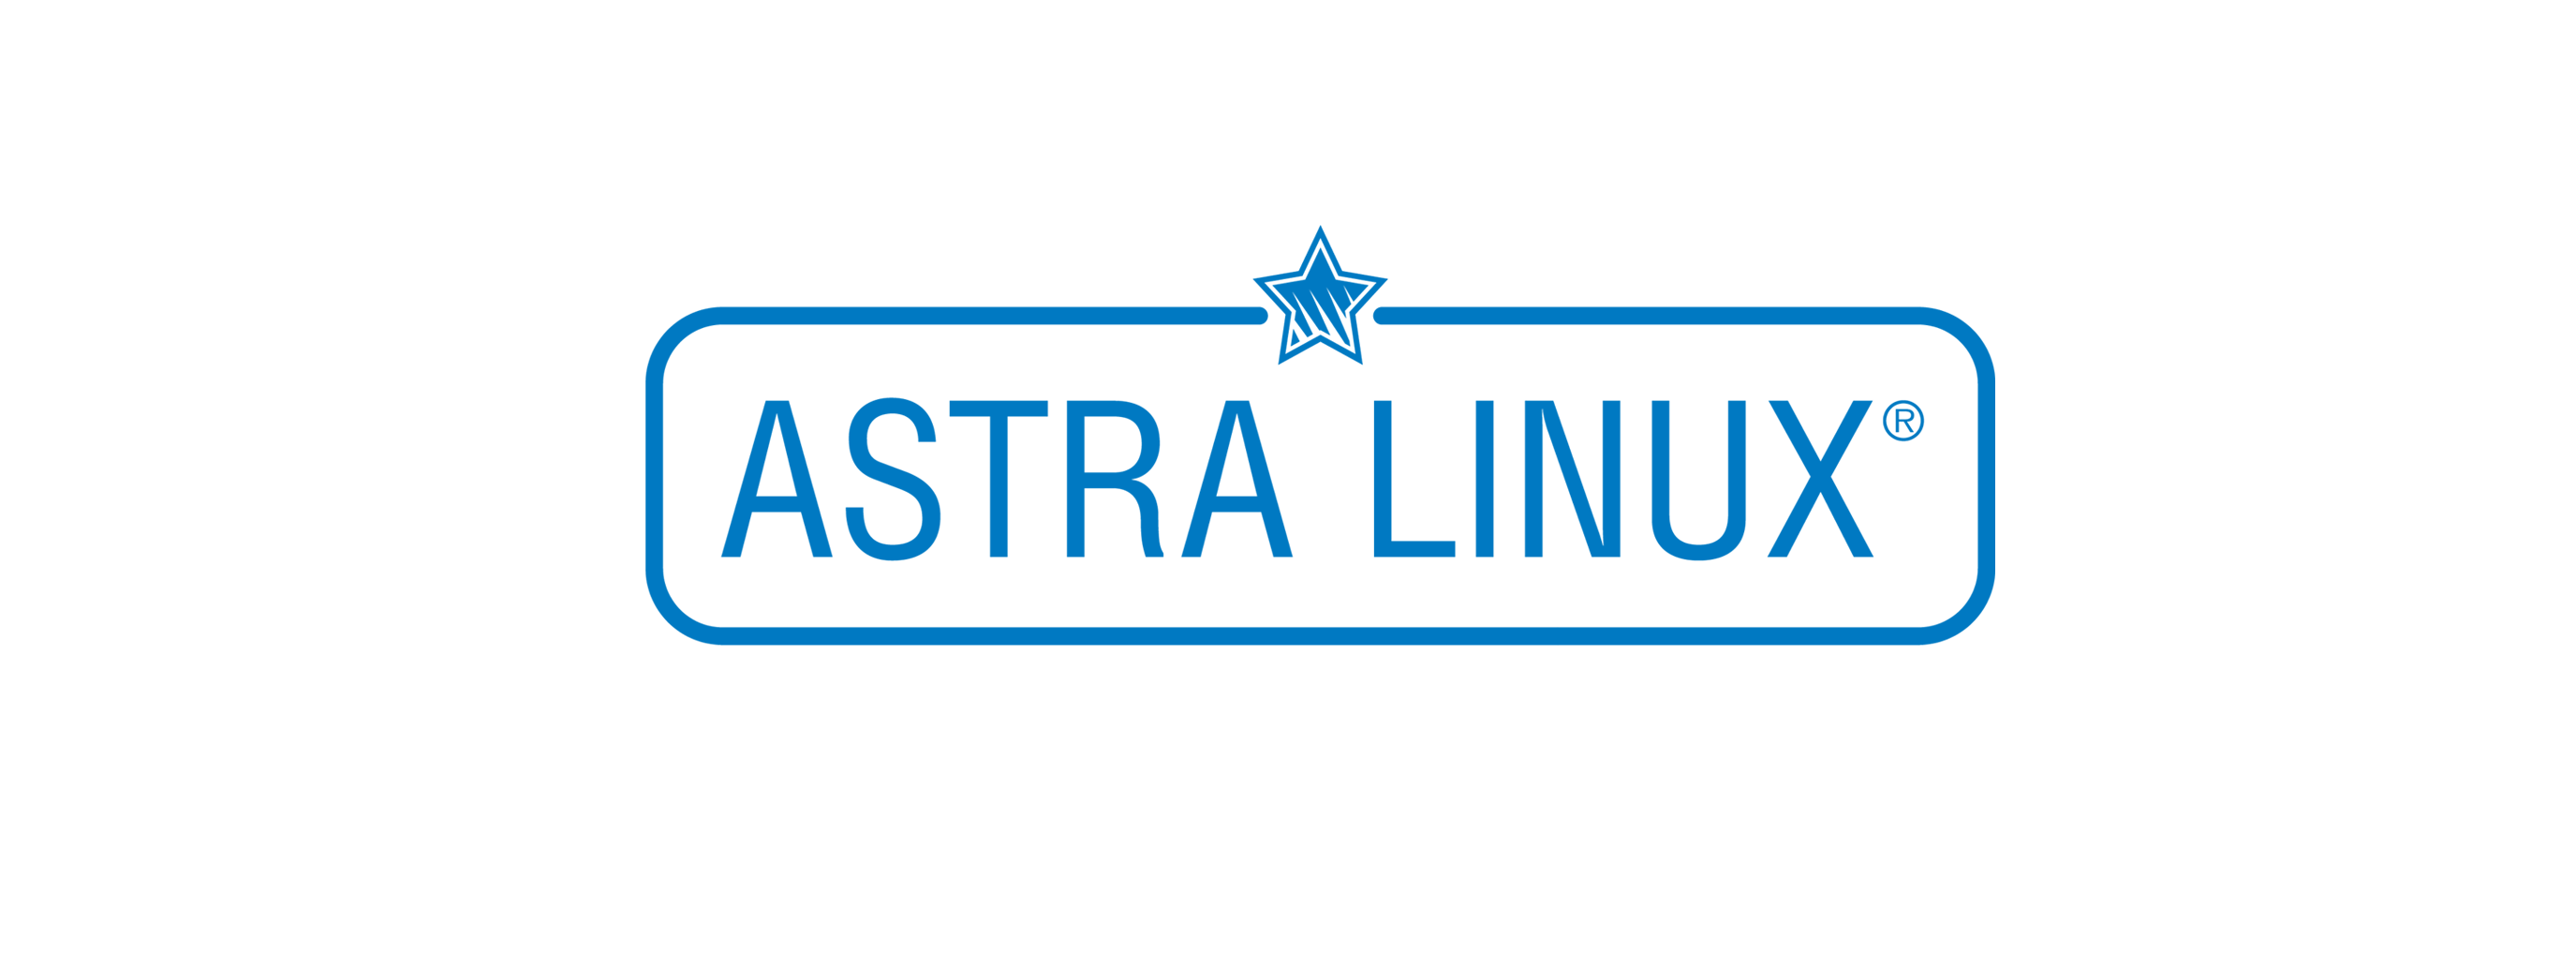 Лицензия РусБИТех Astra Linux Special Edition (очередное обновление 1.7), уровень защищенности Максимальный (Смоленск), РУСБ.10015-01 (ФСТЭК), Russian, на срок действия исключительного права базовая лицензия для рабочей станции, электронный ключ (OS2101X8